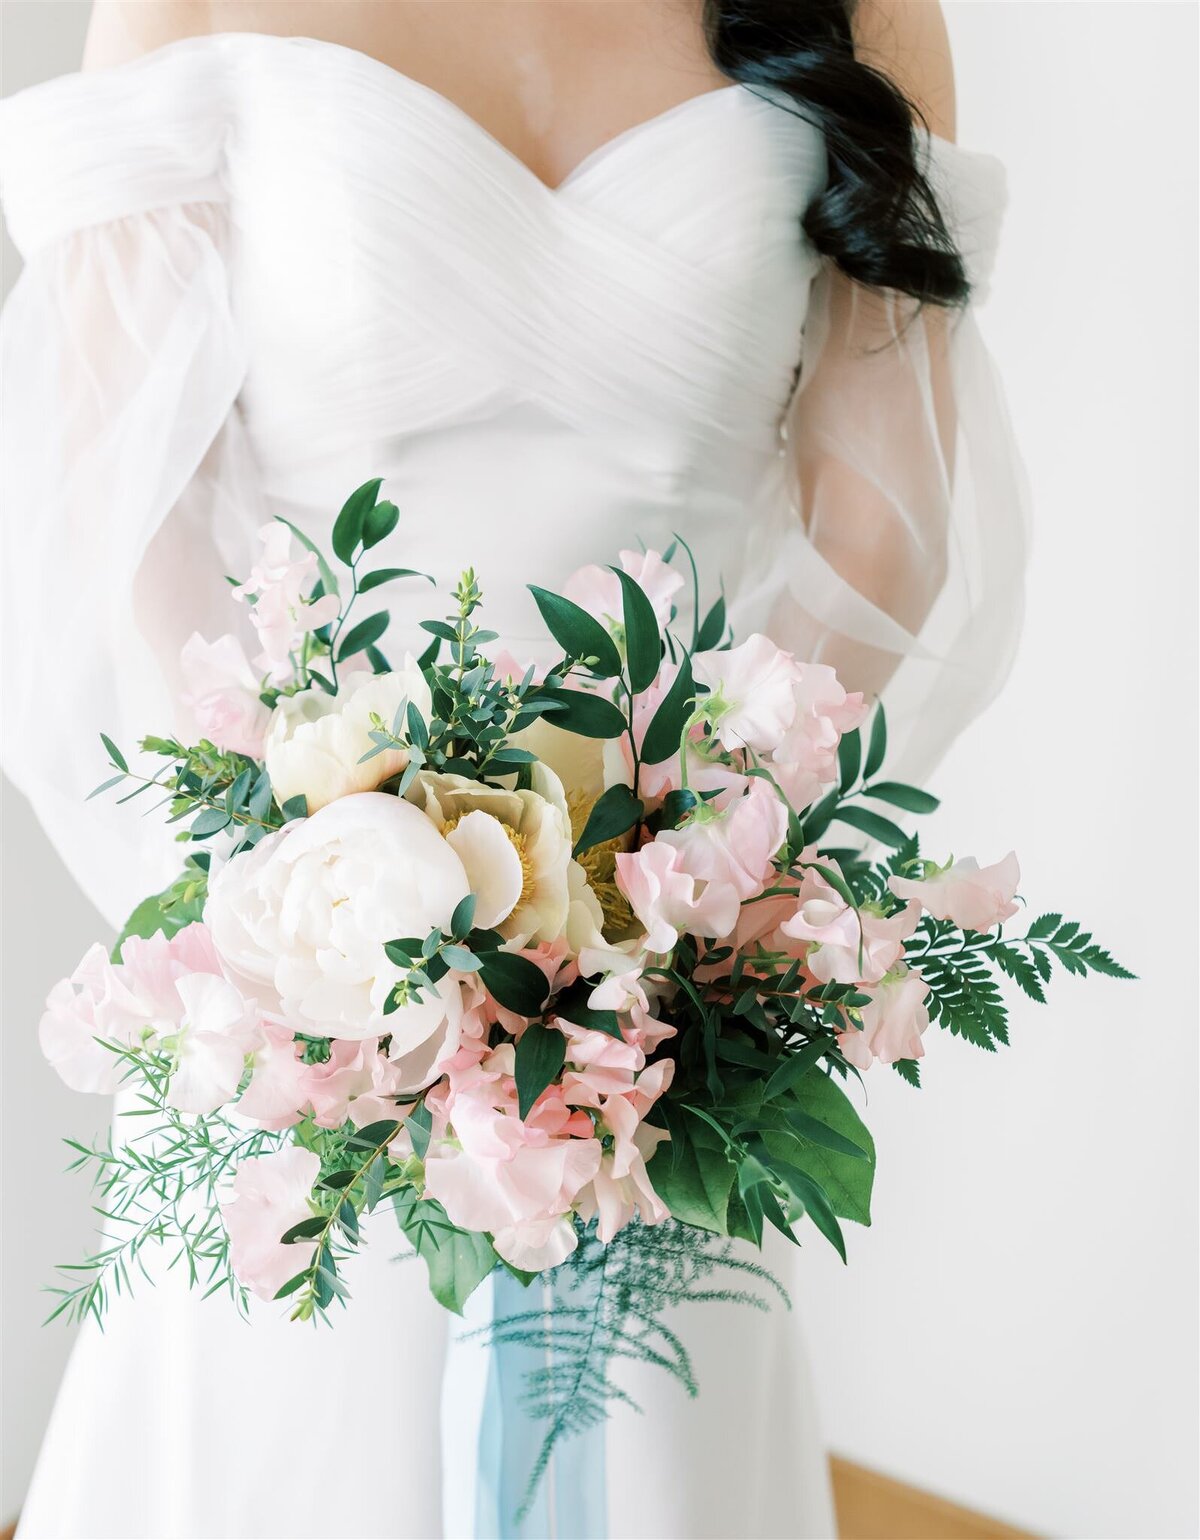 Wedding Photographer Anna Lundgren helloalora fine art wedding portrait with wedding bouquet at Solliden Skansen in Stockholm Sweden